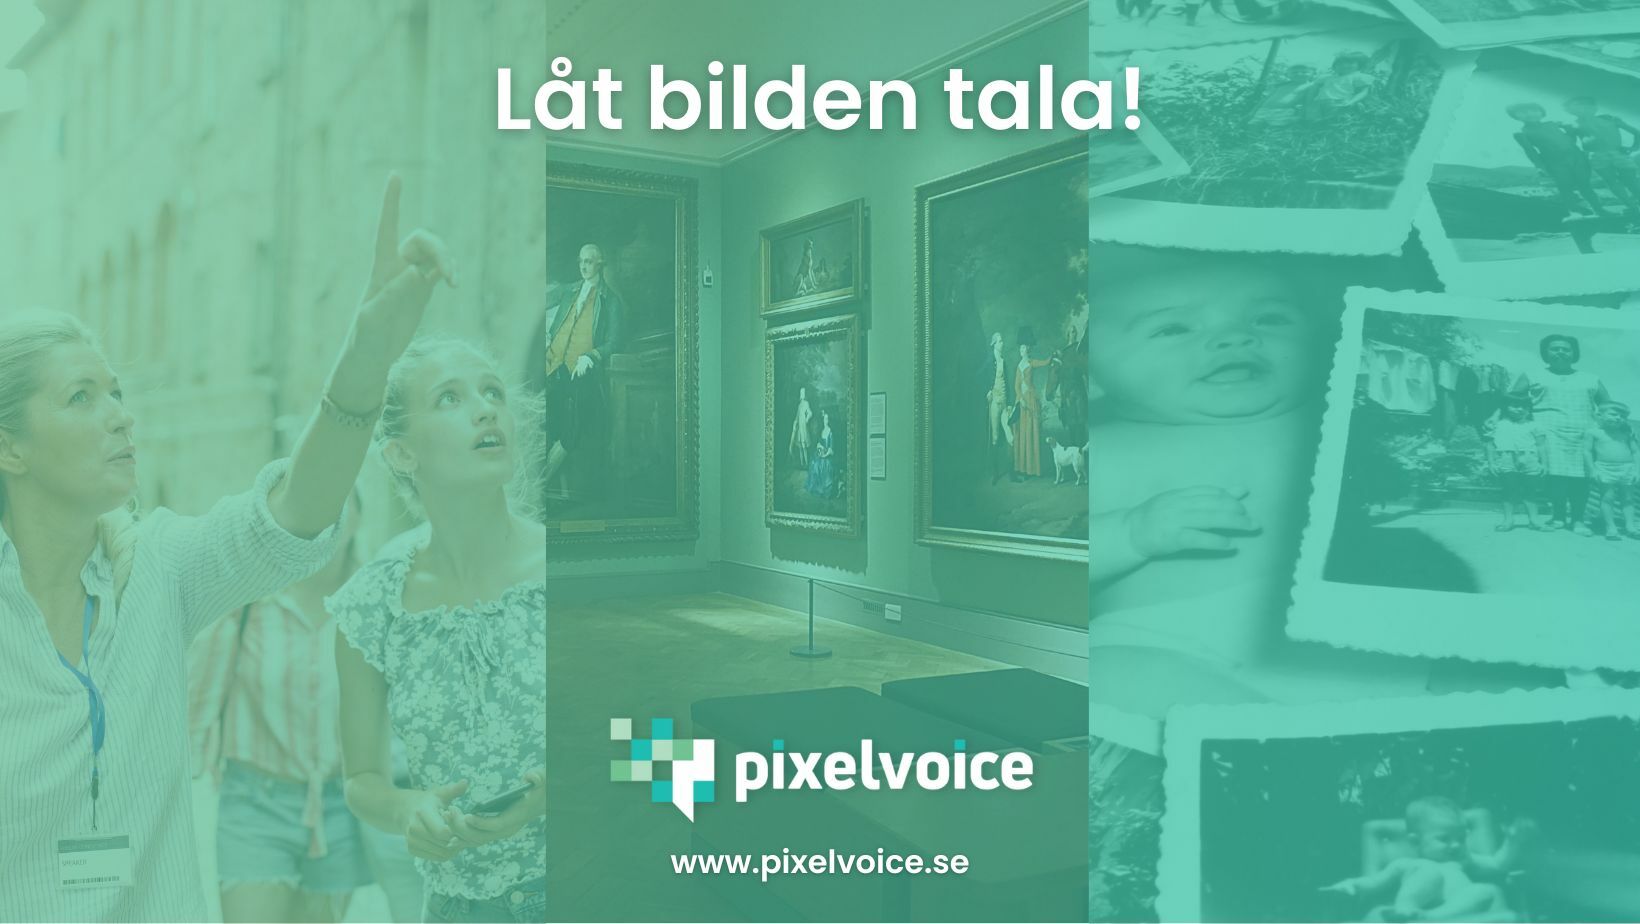 Pixelvoice Image